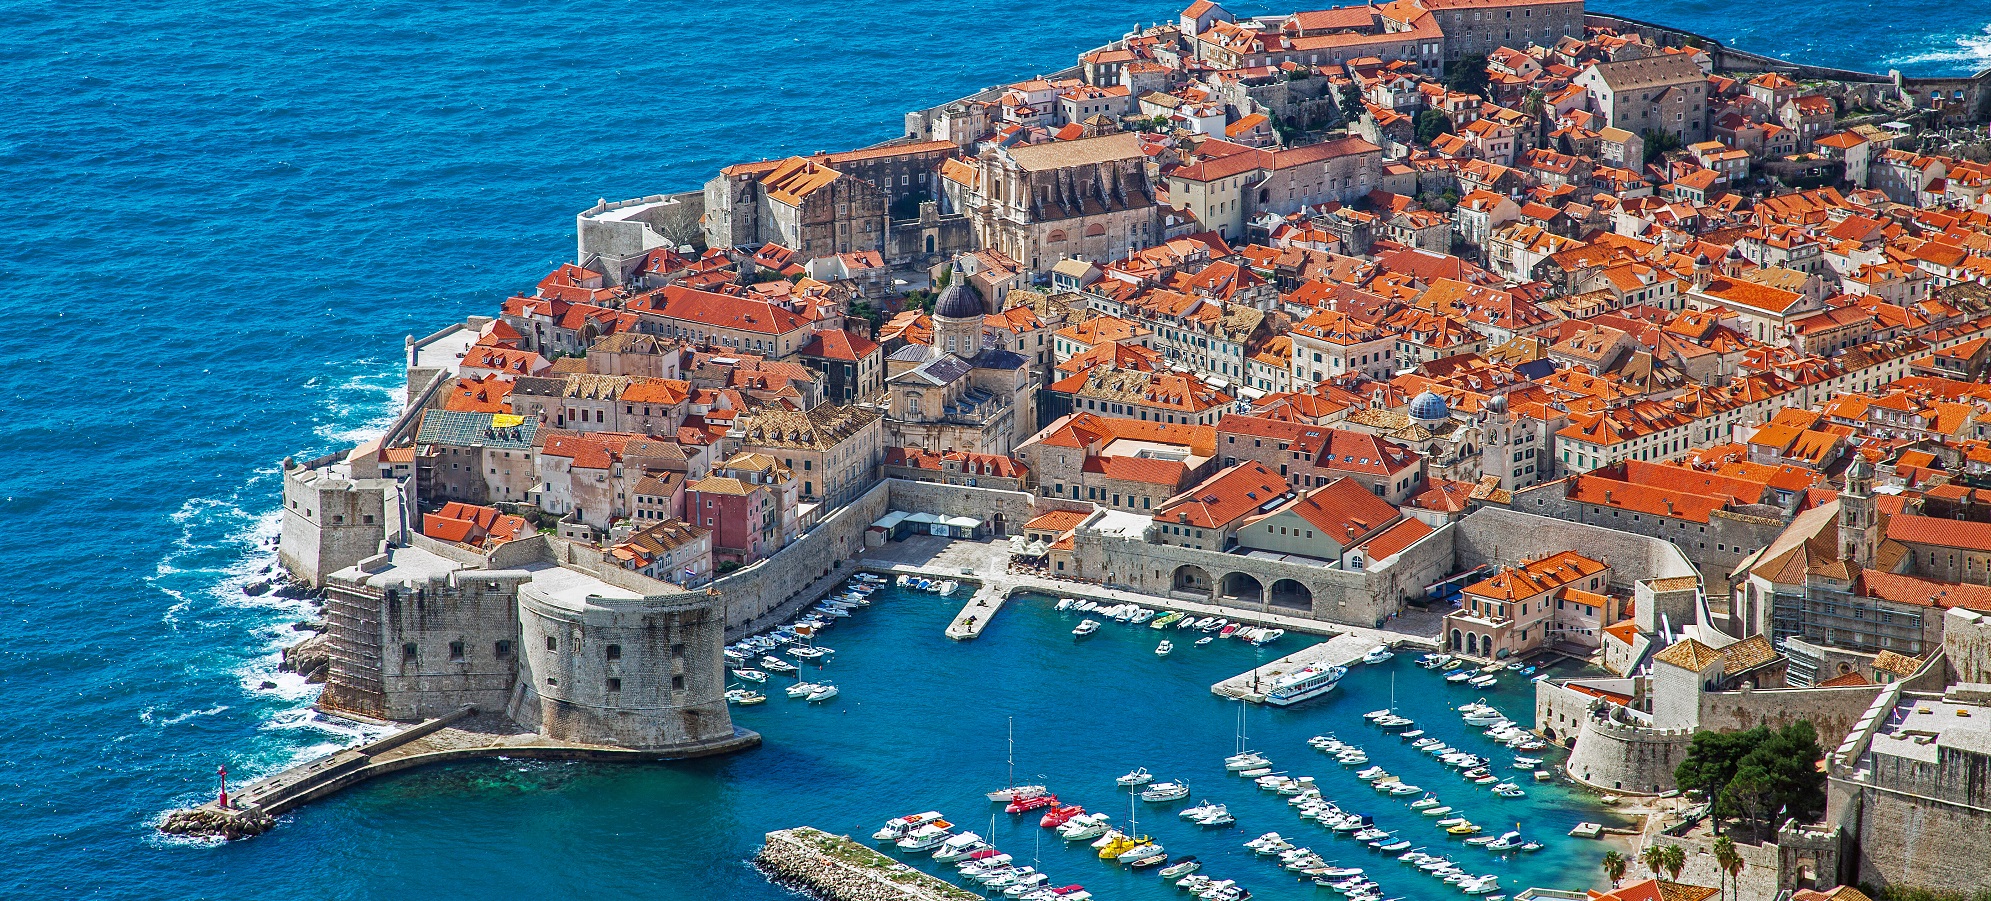 UNESCO-Welterbestätten in Dalmatien: Von Zadar bis Dubrovnik